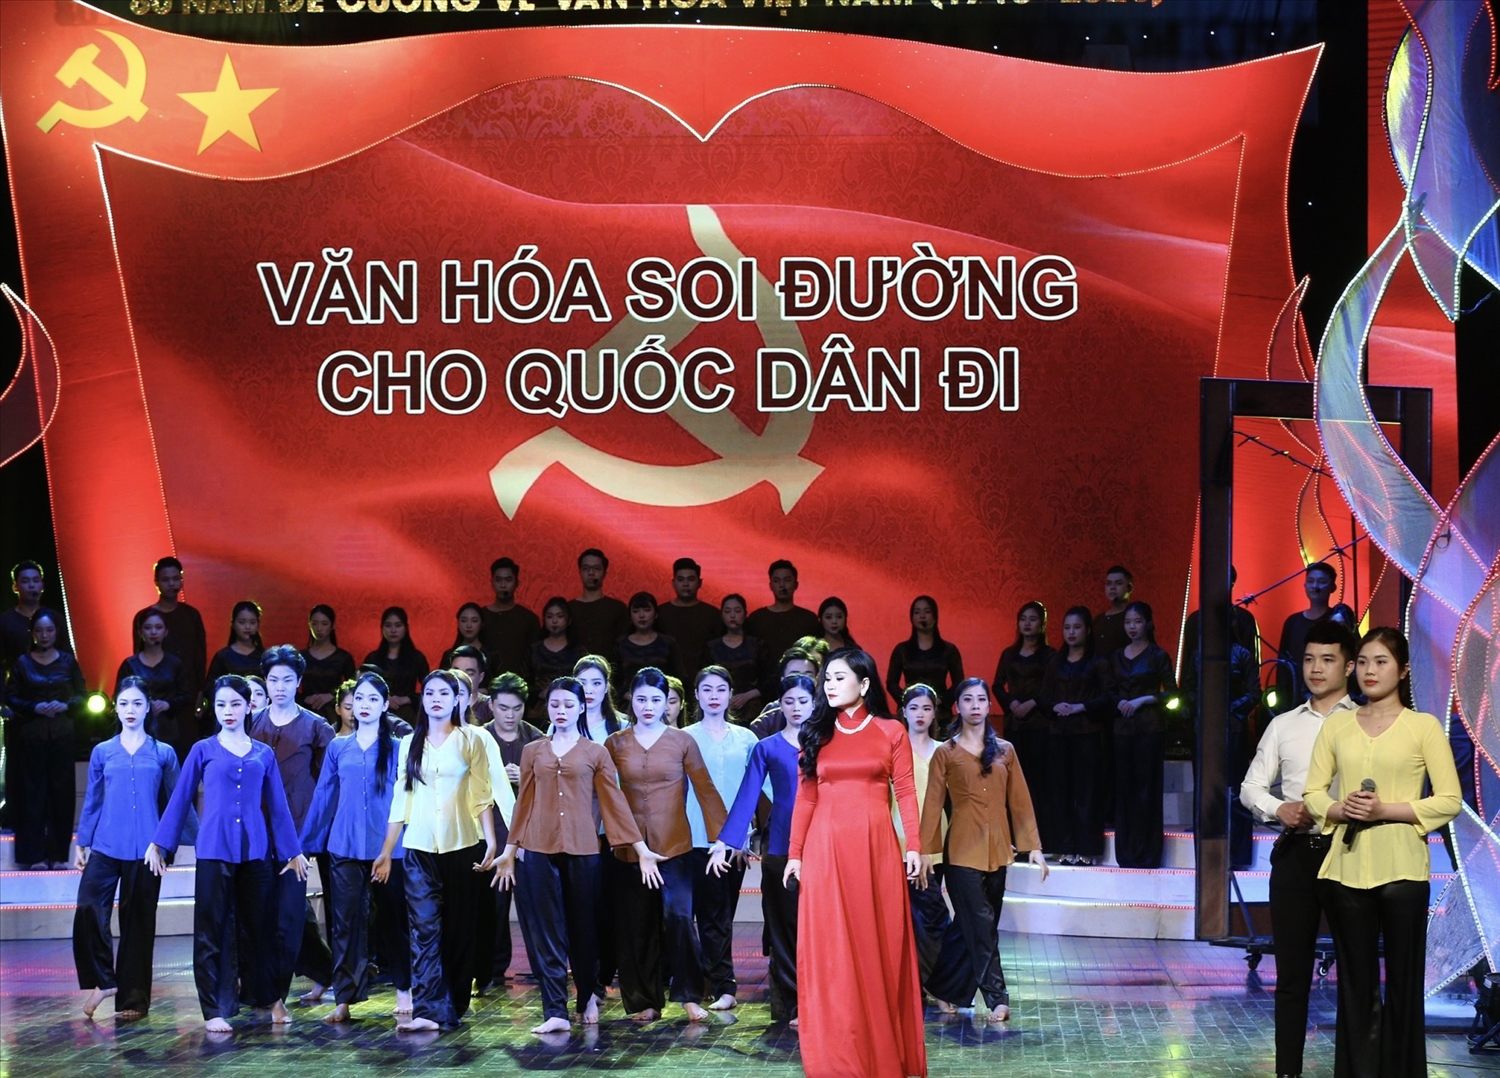 Chương trình nghệ thuật đặc biệt kỷ niệm 80 năm ra đời Đề cương về văn hoá Việt Nam được dàn dựng công phu với nhiều tiết mục đặc sắc